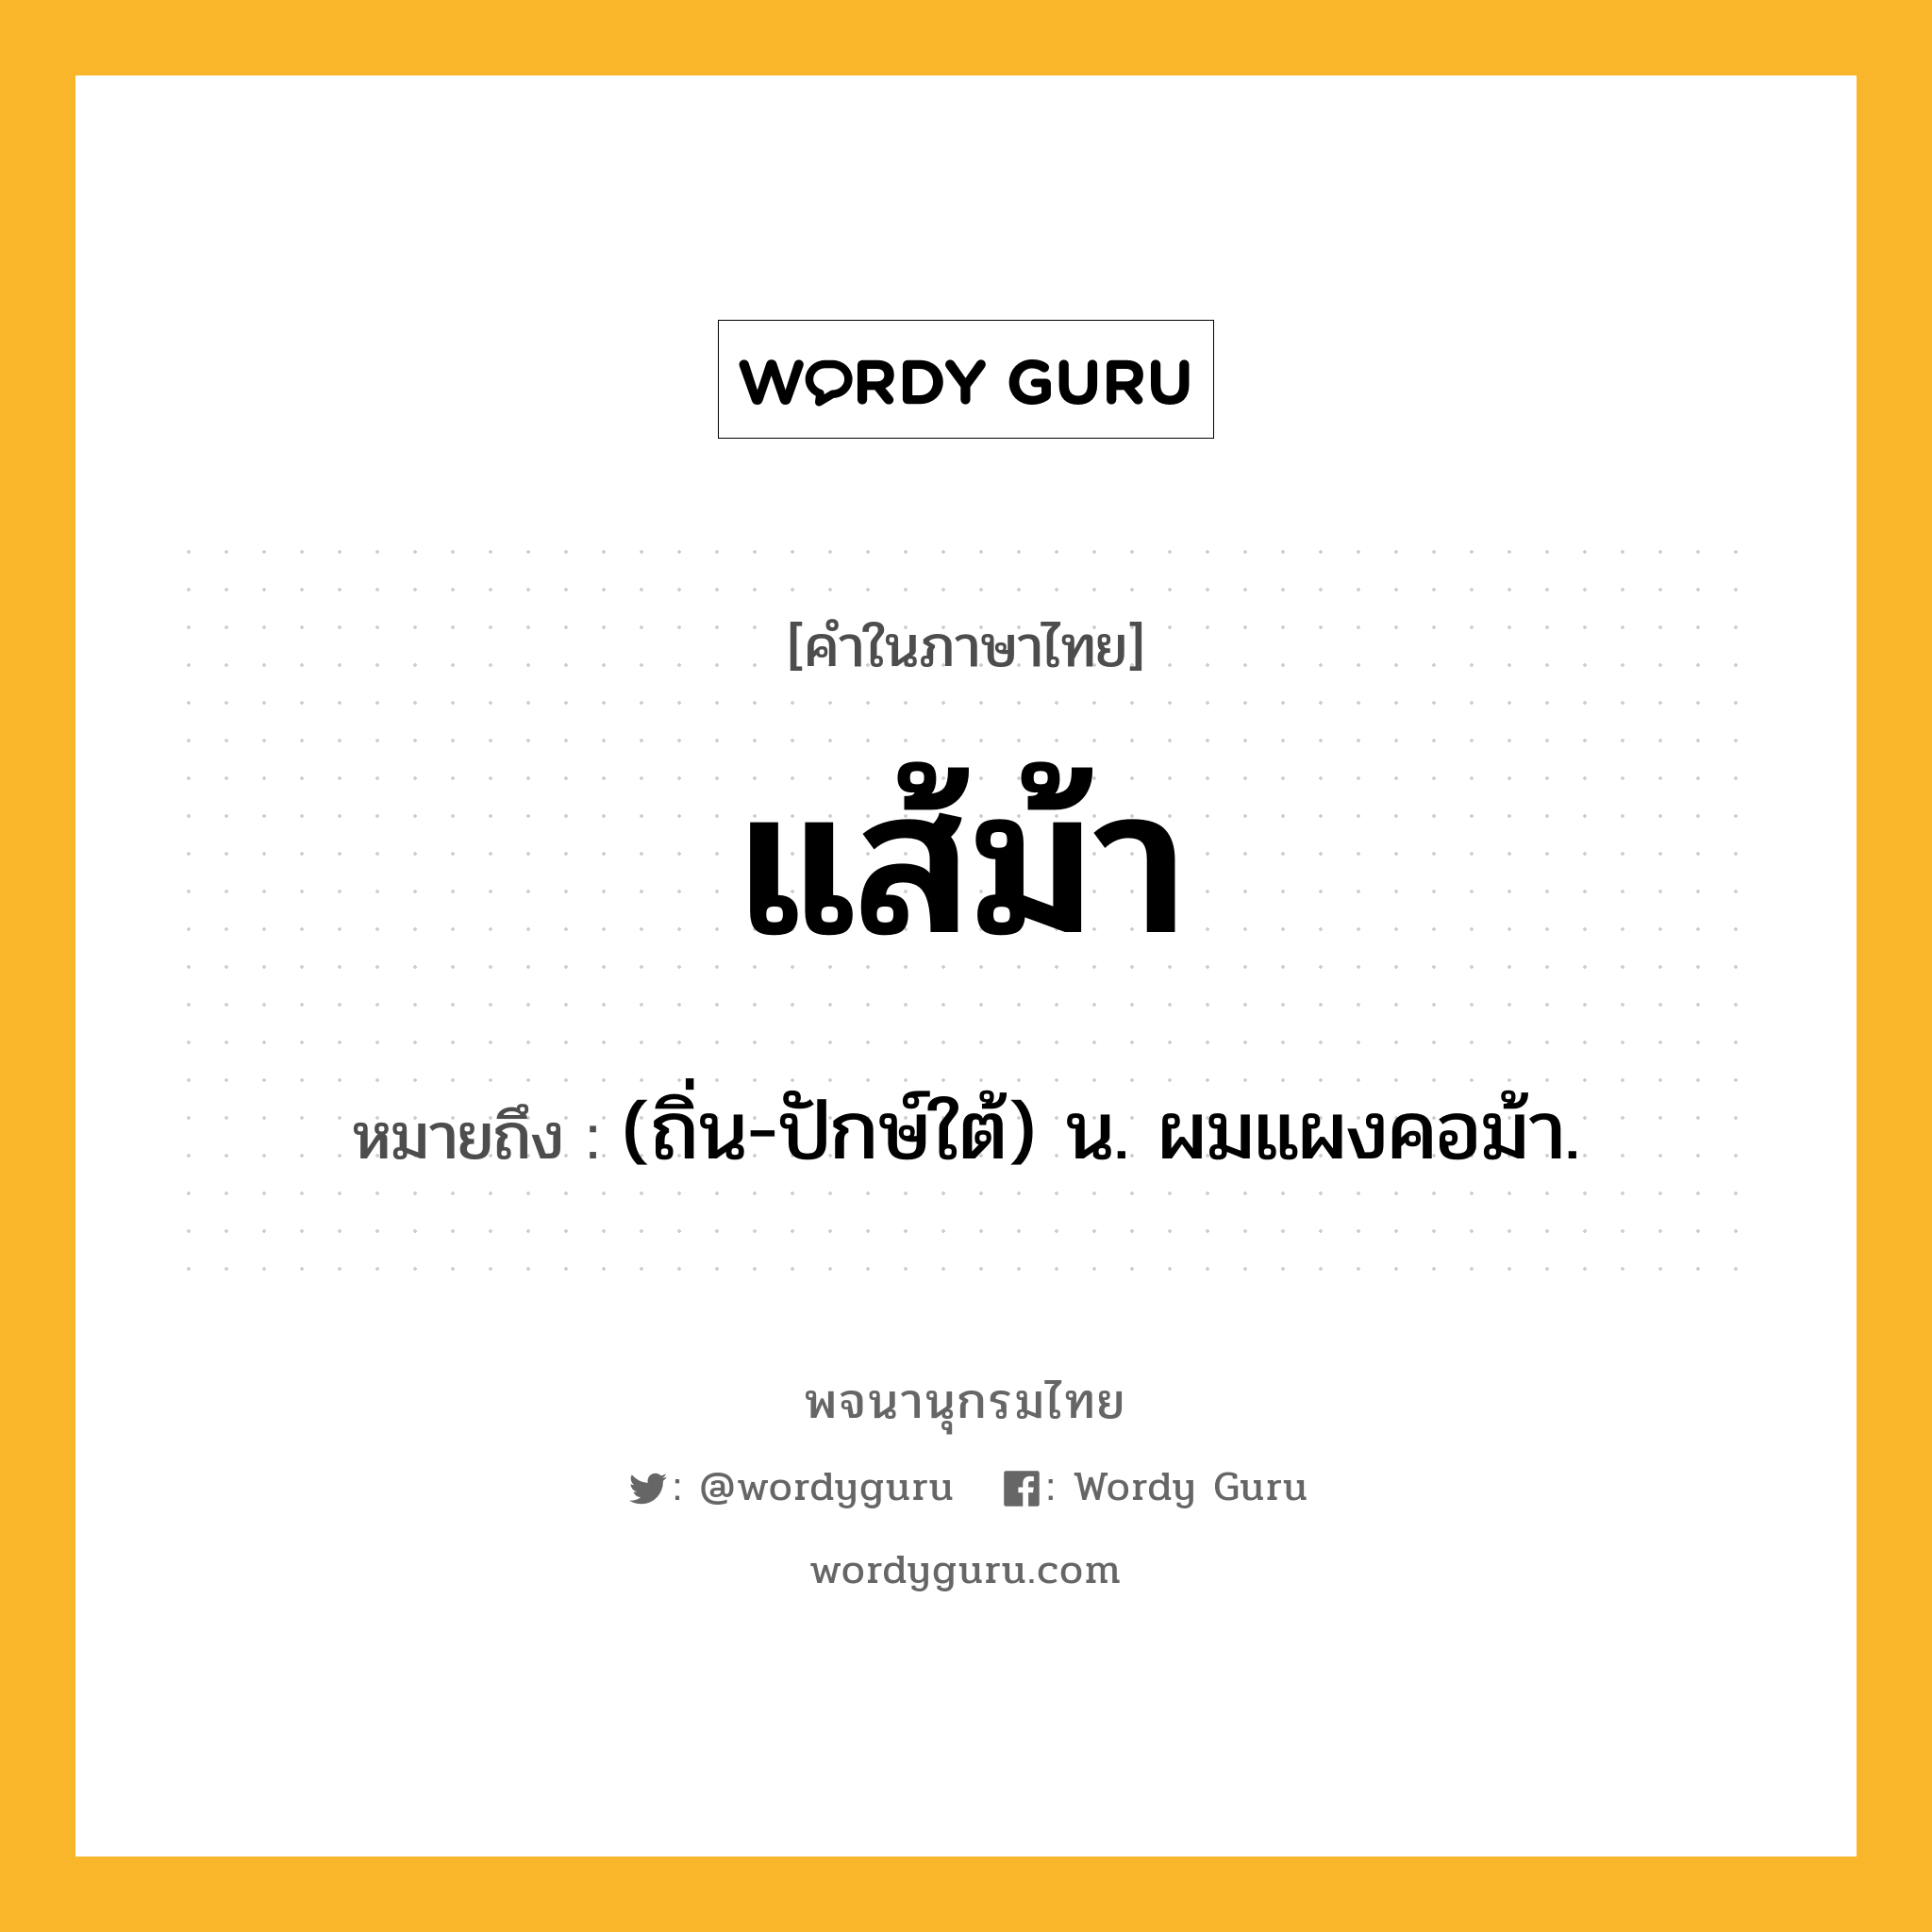 แส้ม้า ความหมาย หมายถึงอะไร?, คำในภาษาไทย แส้ม้า หมายถึง (ถิ่น-ปักษ์ใต้) น. ผมแผงคอม้า.